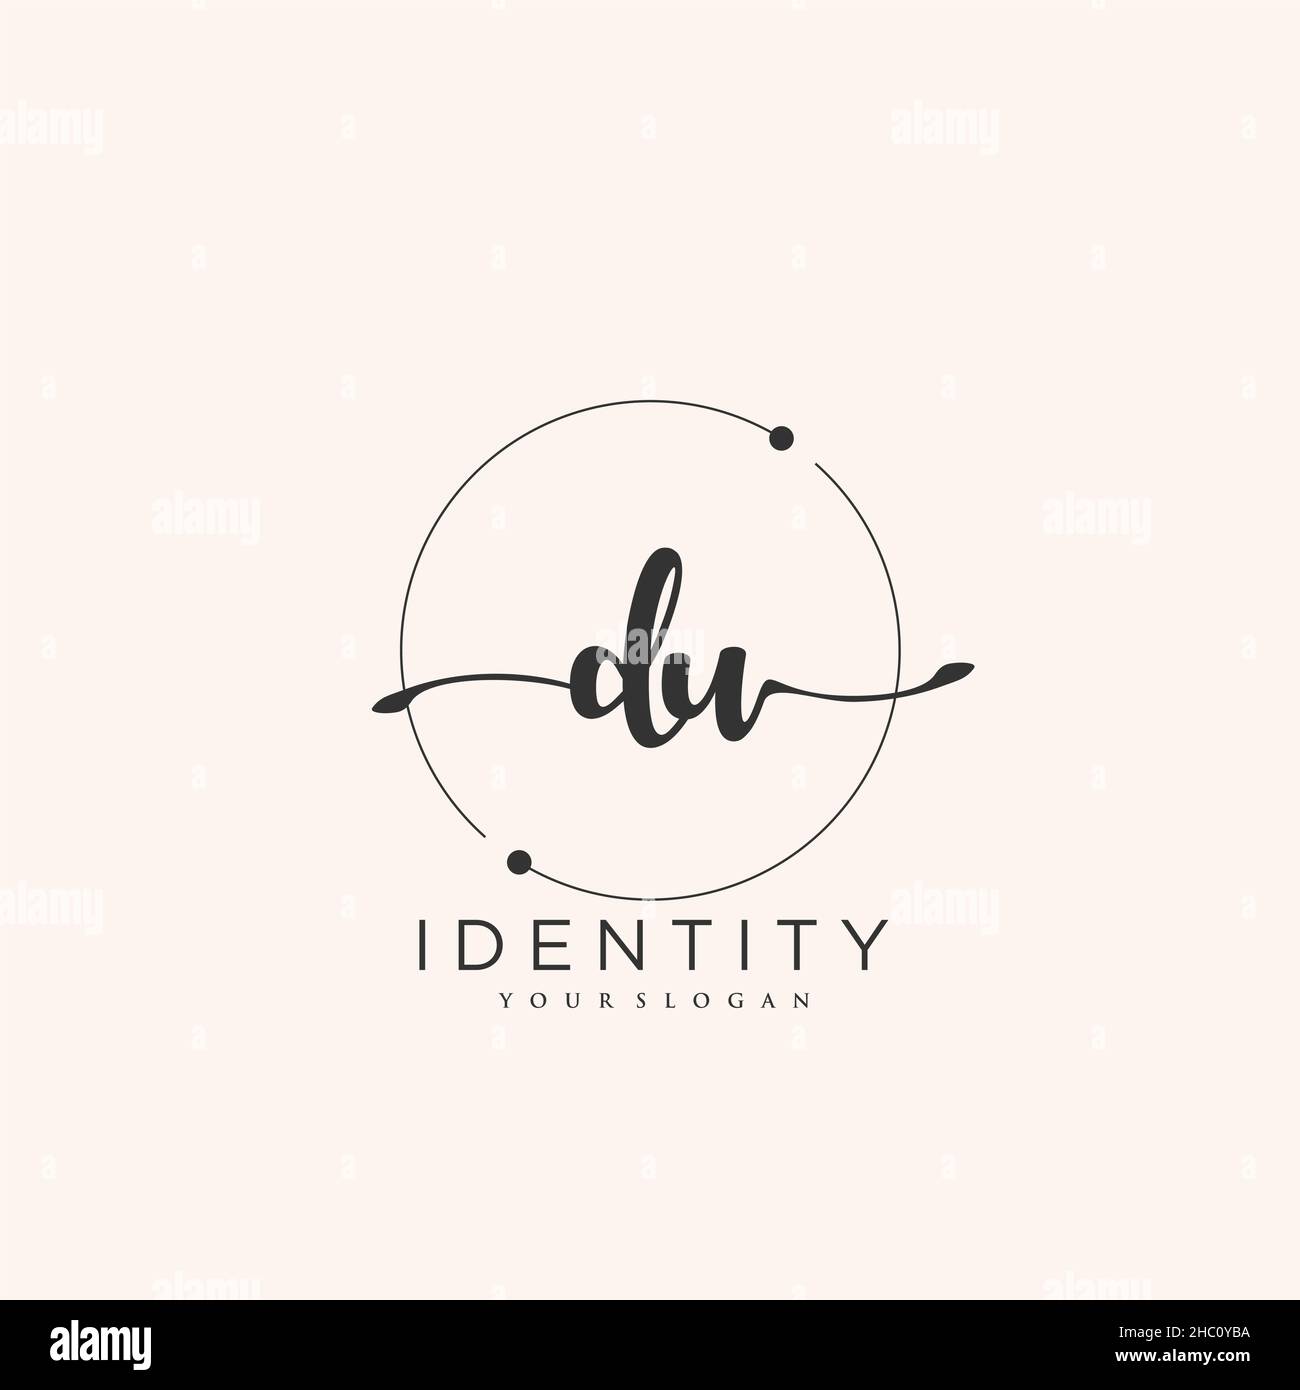 DU Handwriting logo arte vectorial de la firma inicial, boda, moda, joyería, boutique, floral y botánico con plantilla creativa para cualquier empresa Ilustración del Vector